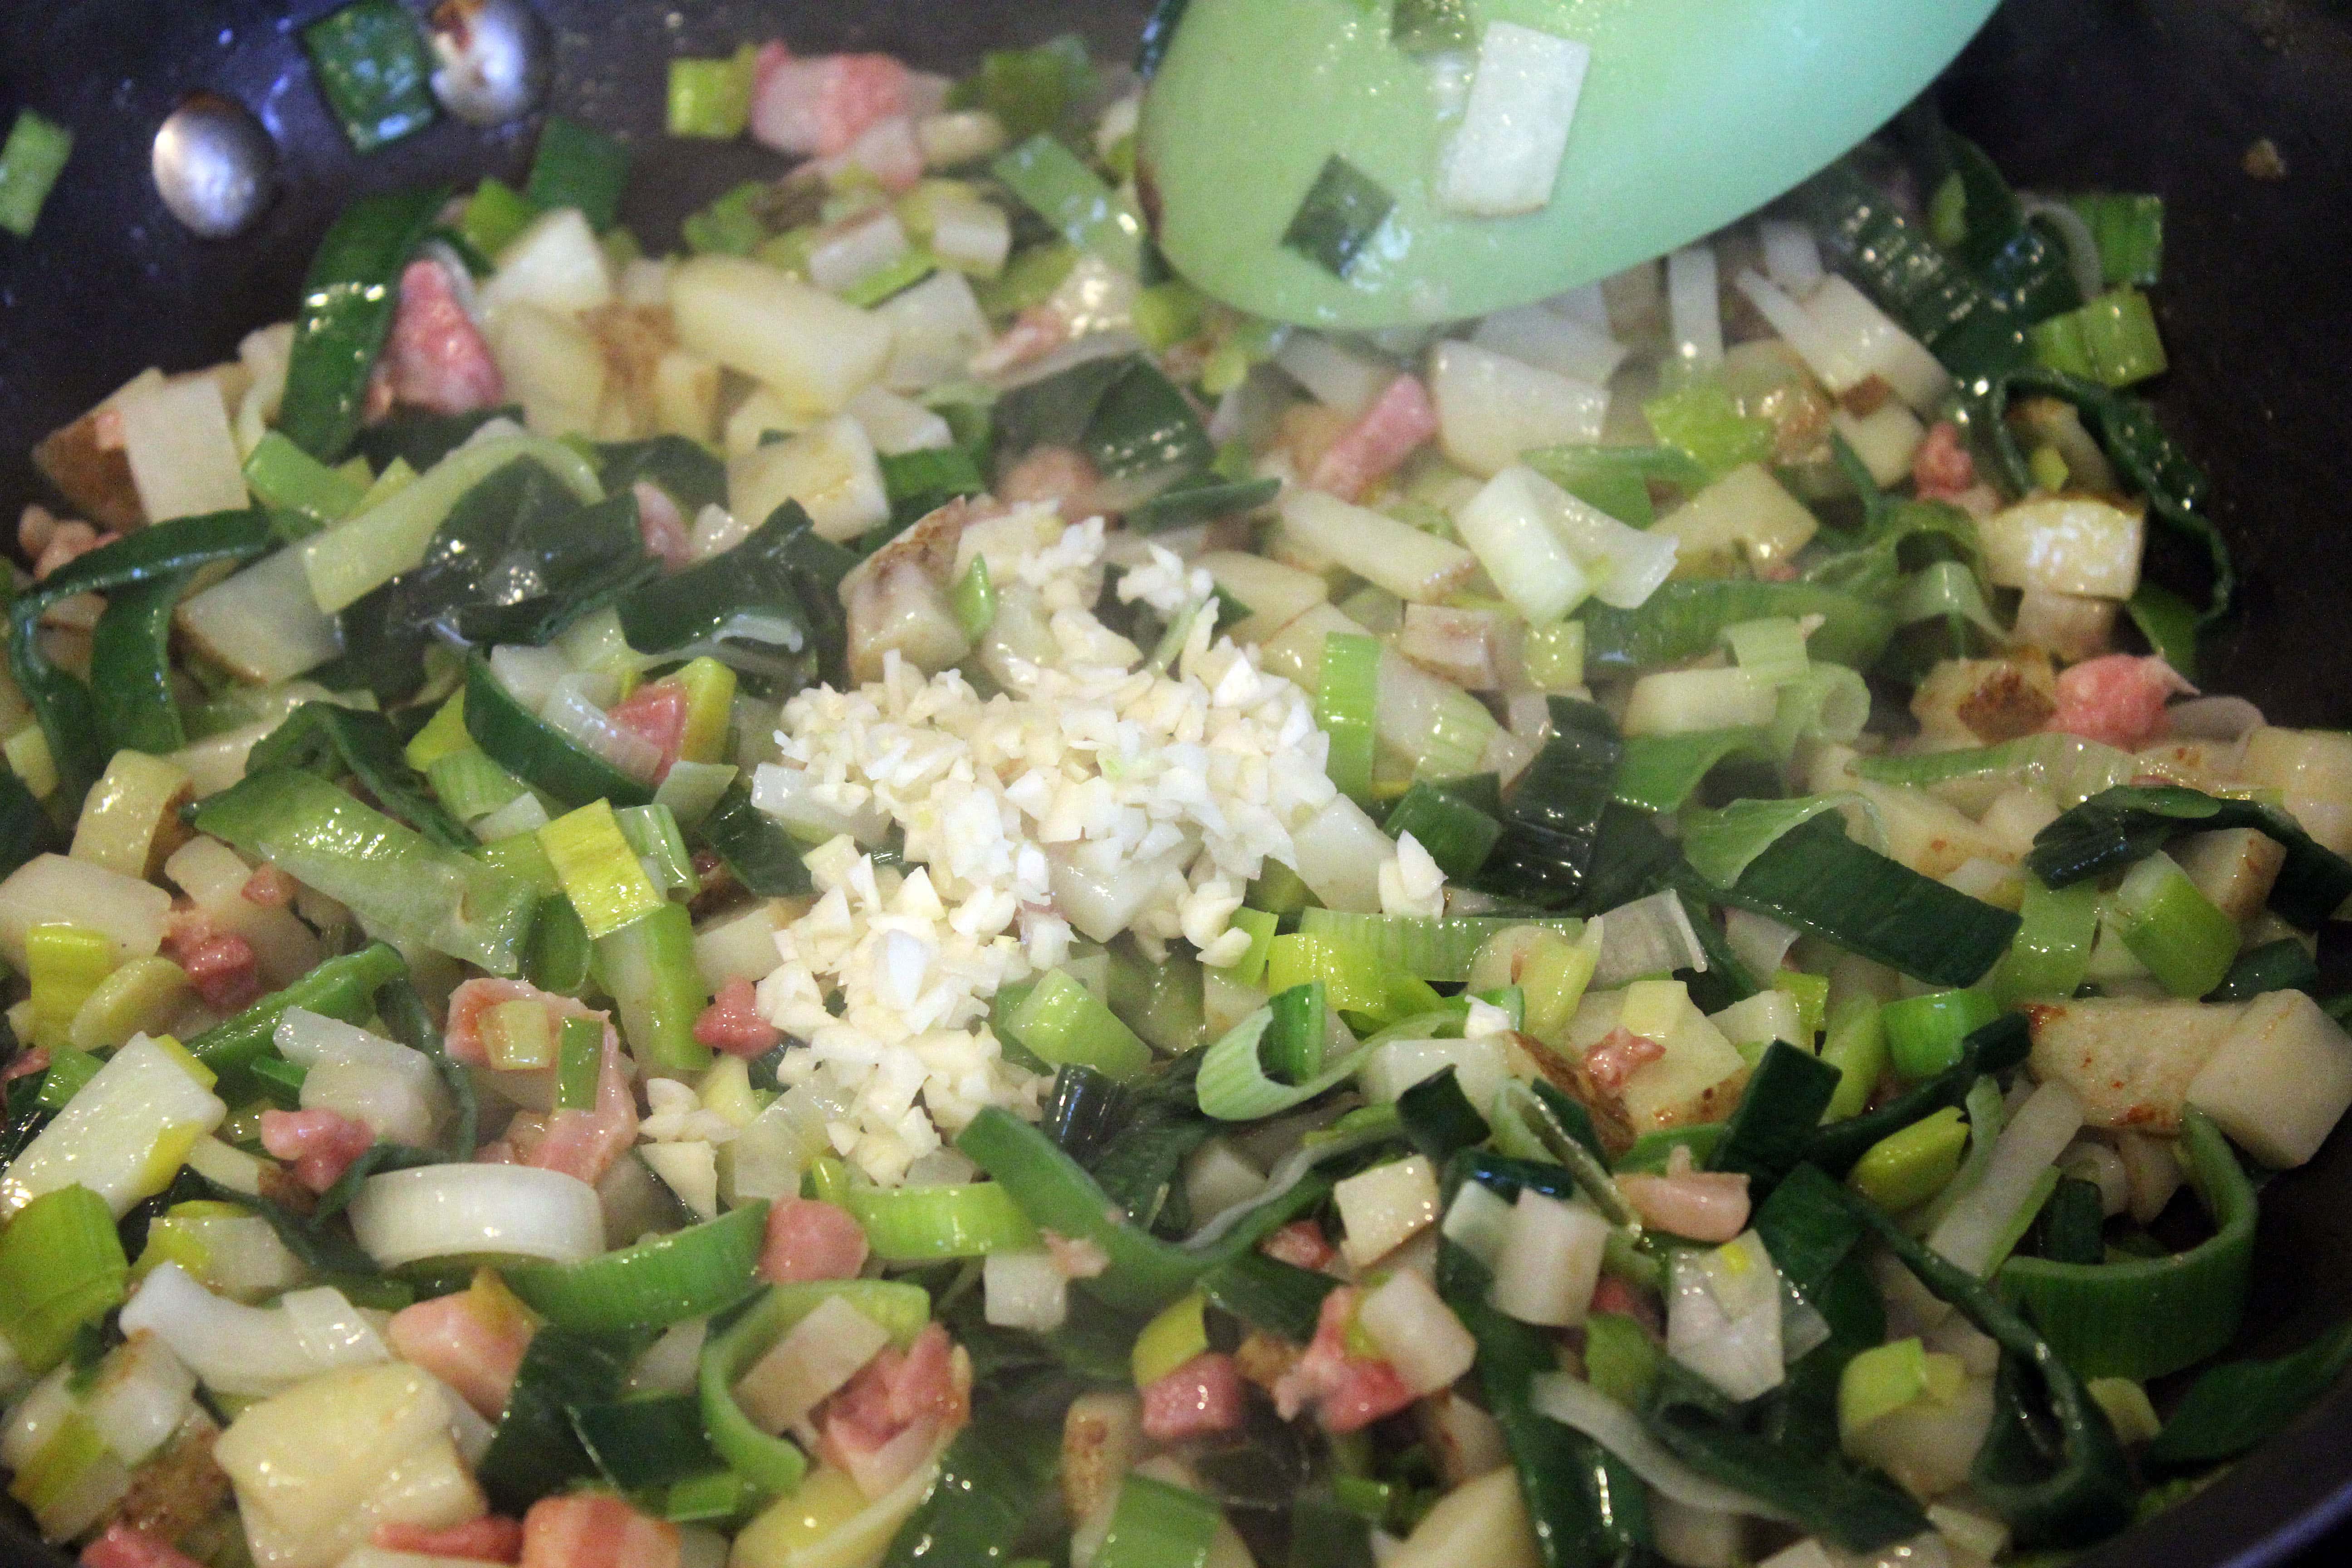 Add garlic to leek mixture